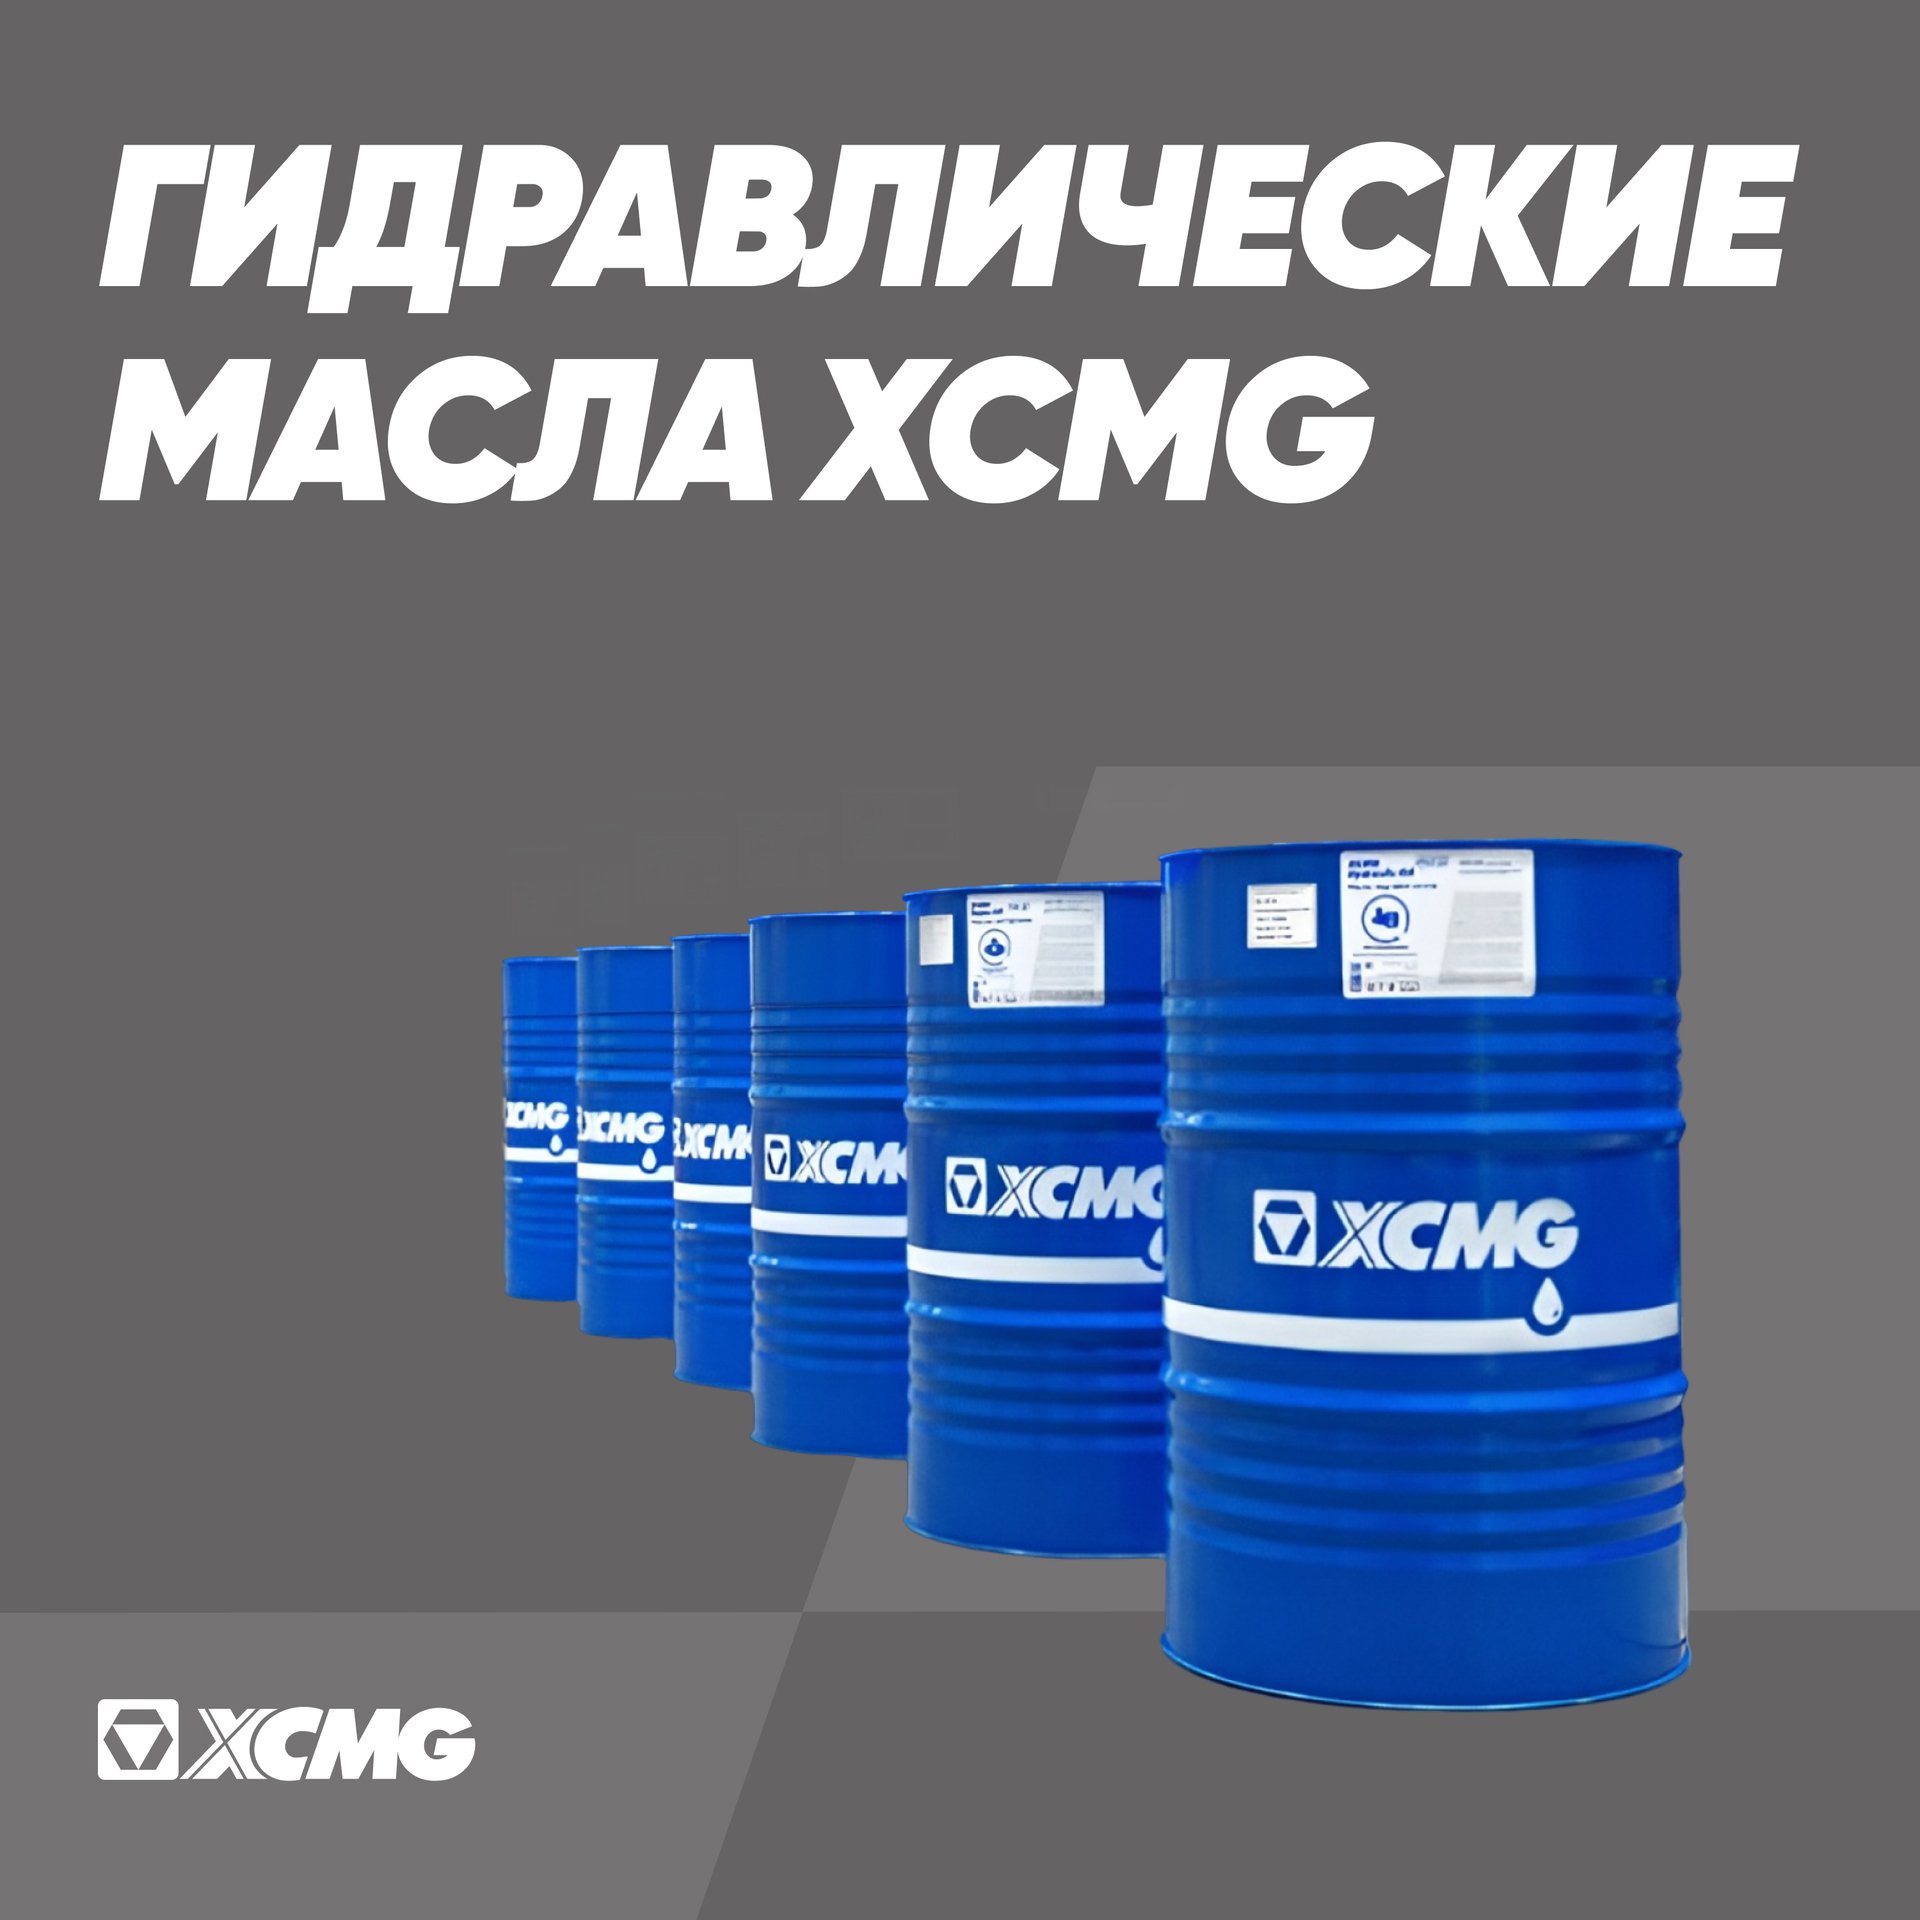 Гидравлические масла XCMG - 